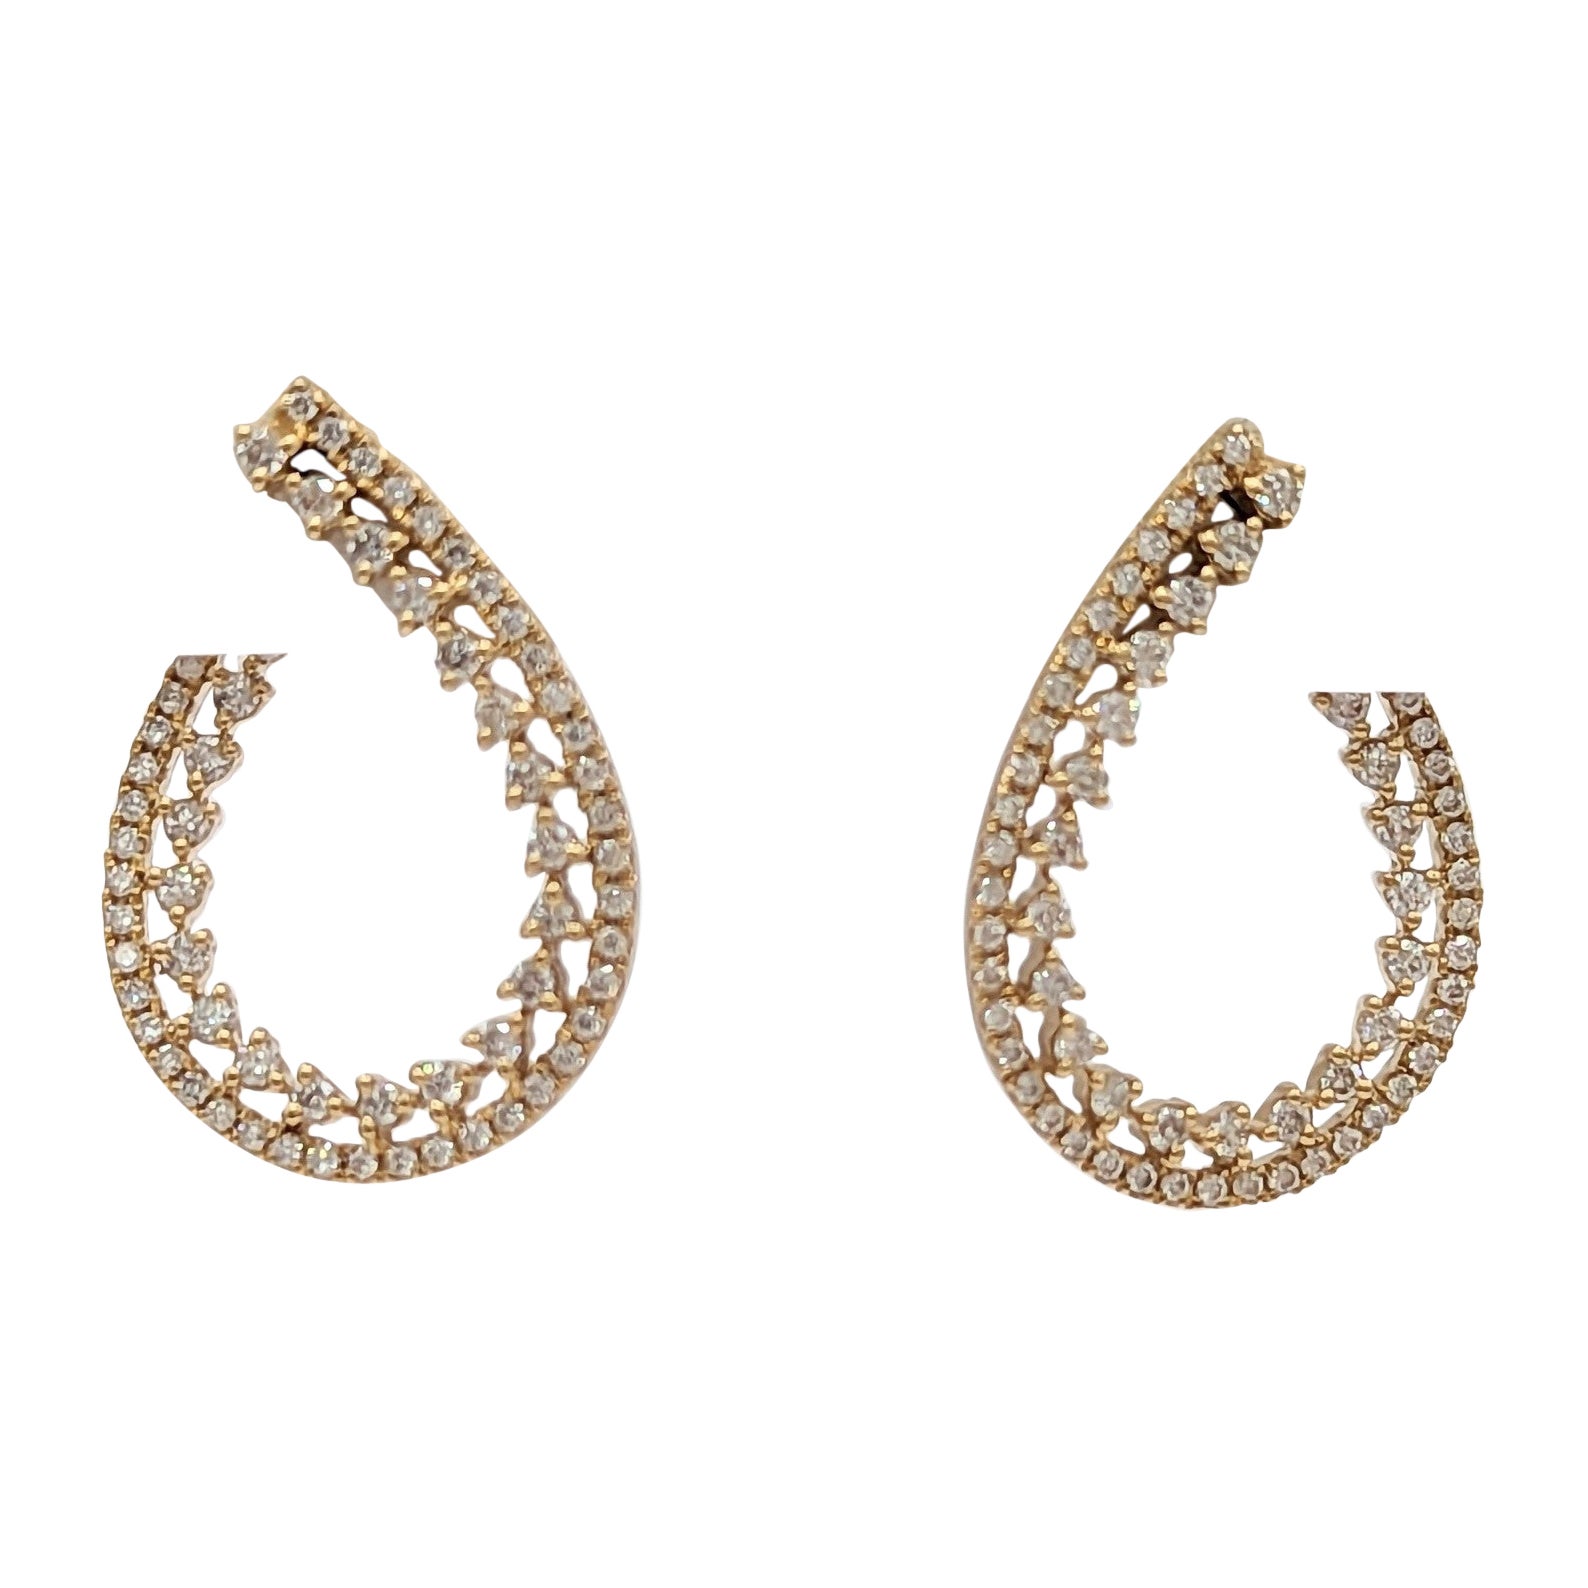 White Diamond Double Row Hoop Earrings in 18K Yellow Gold